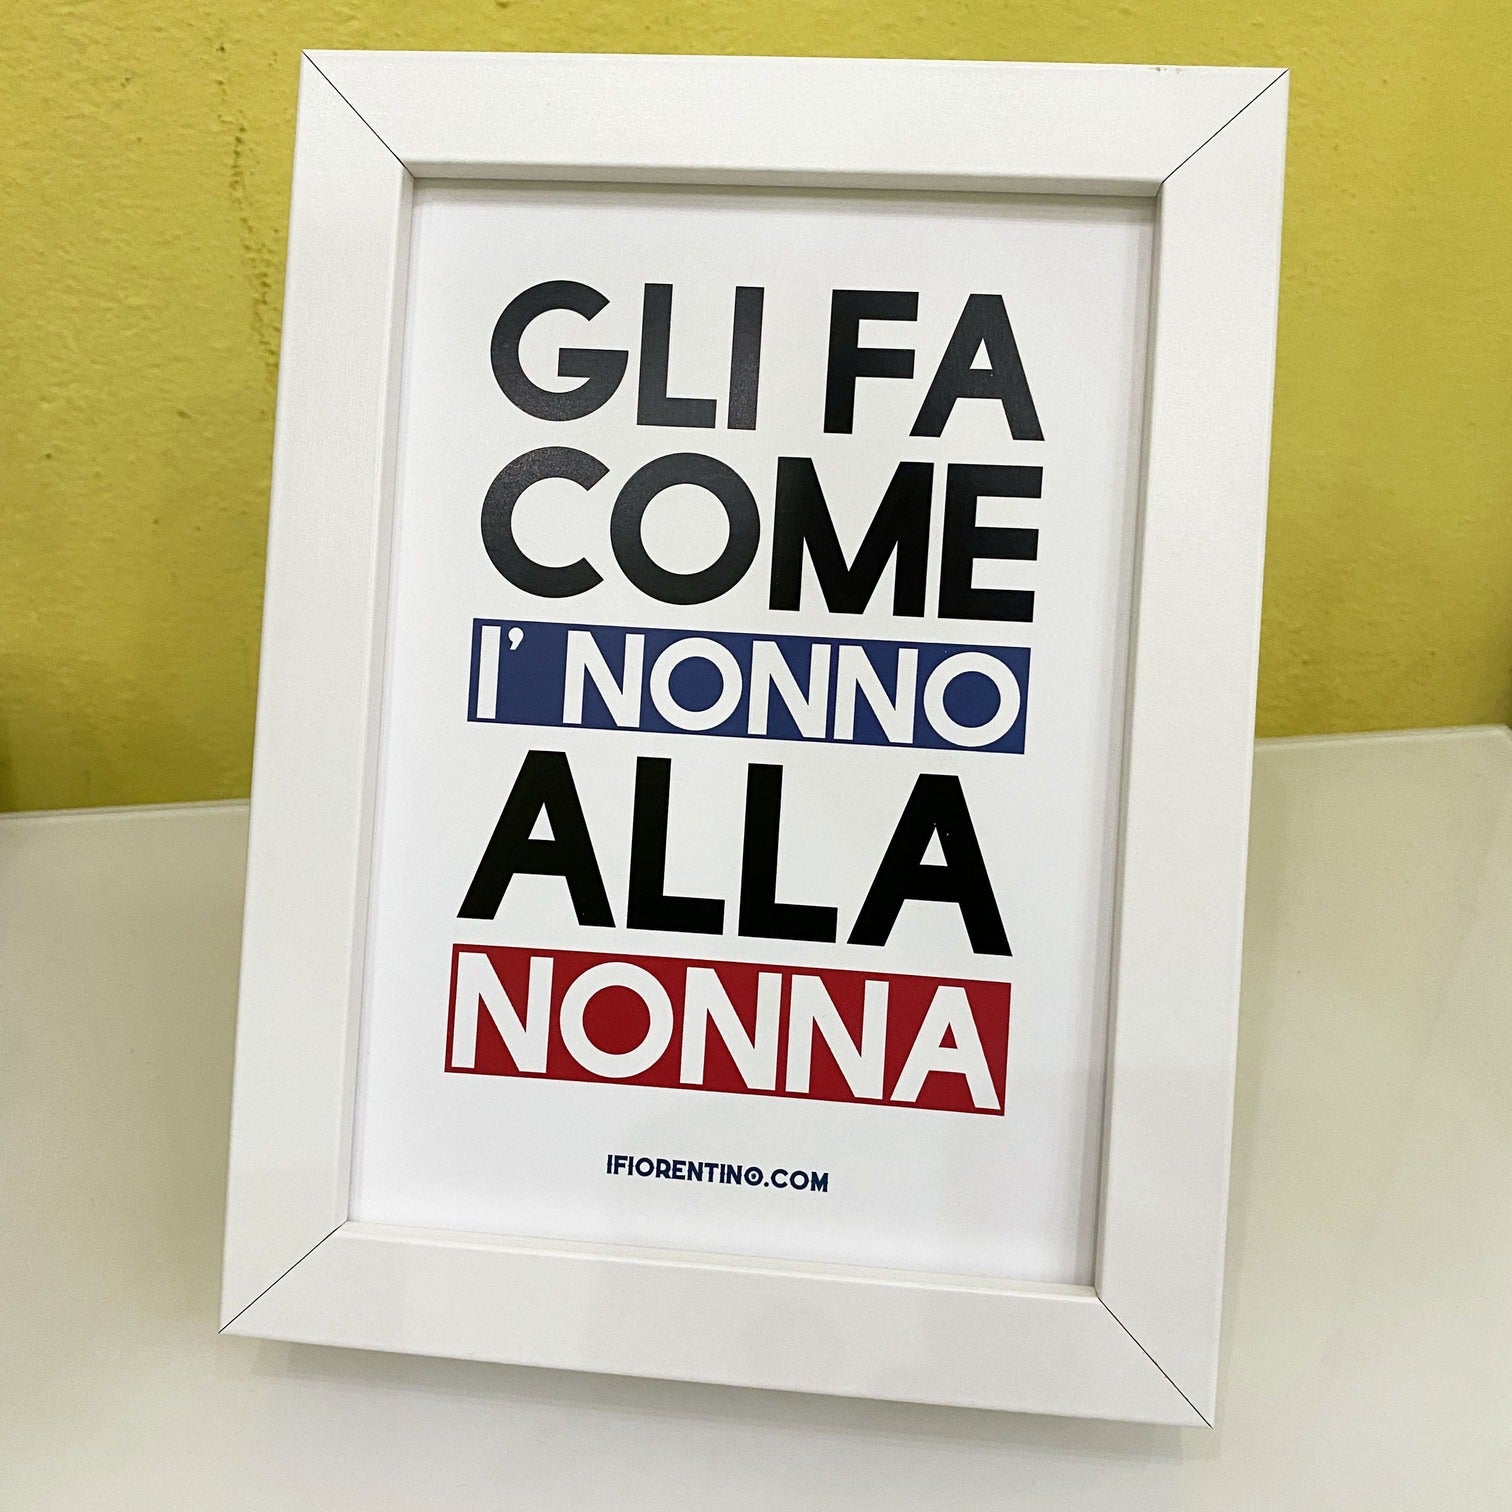 GLI FA COME I'NONNO ALLA NONNA STAMPA + CORNICE - poster fiorentini - poster firenze - regalo fiorentino - fiorentino  - foppeddittelo